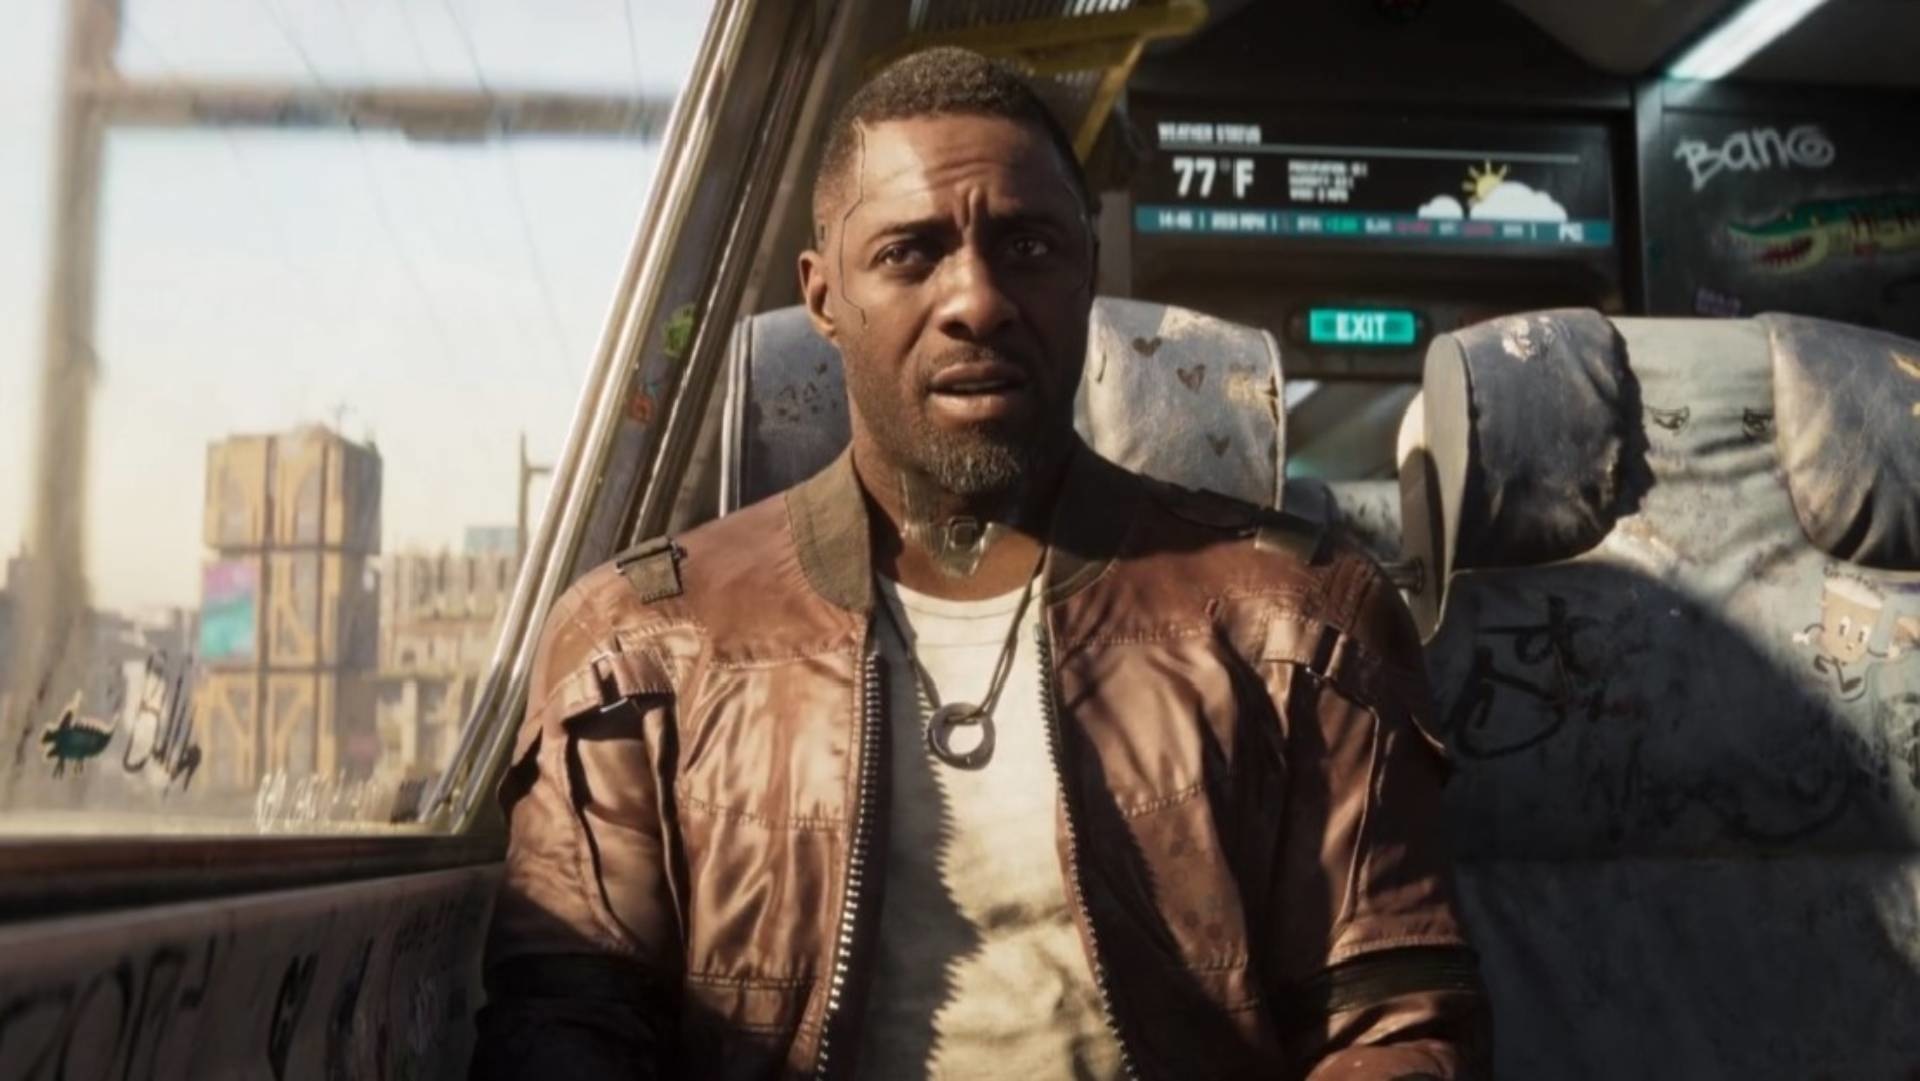 Solomon Reed interpretato da Idris Elba lavora sotto copertura come vigilante e puoi vederlo in questo ruolo